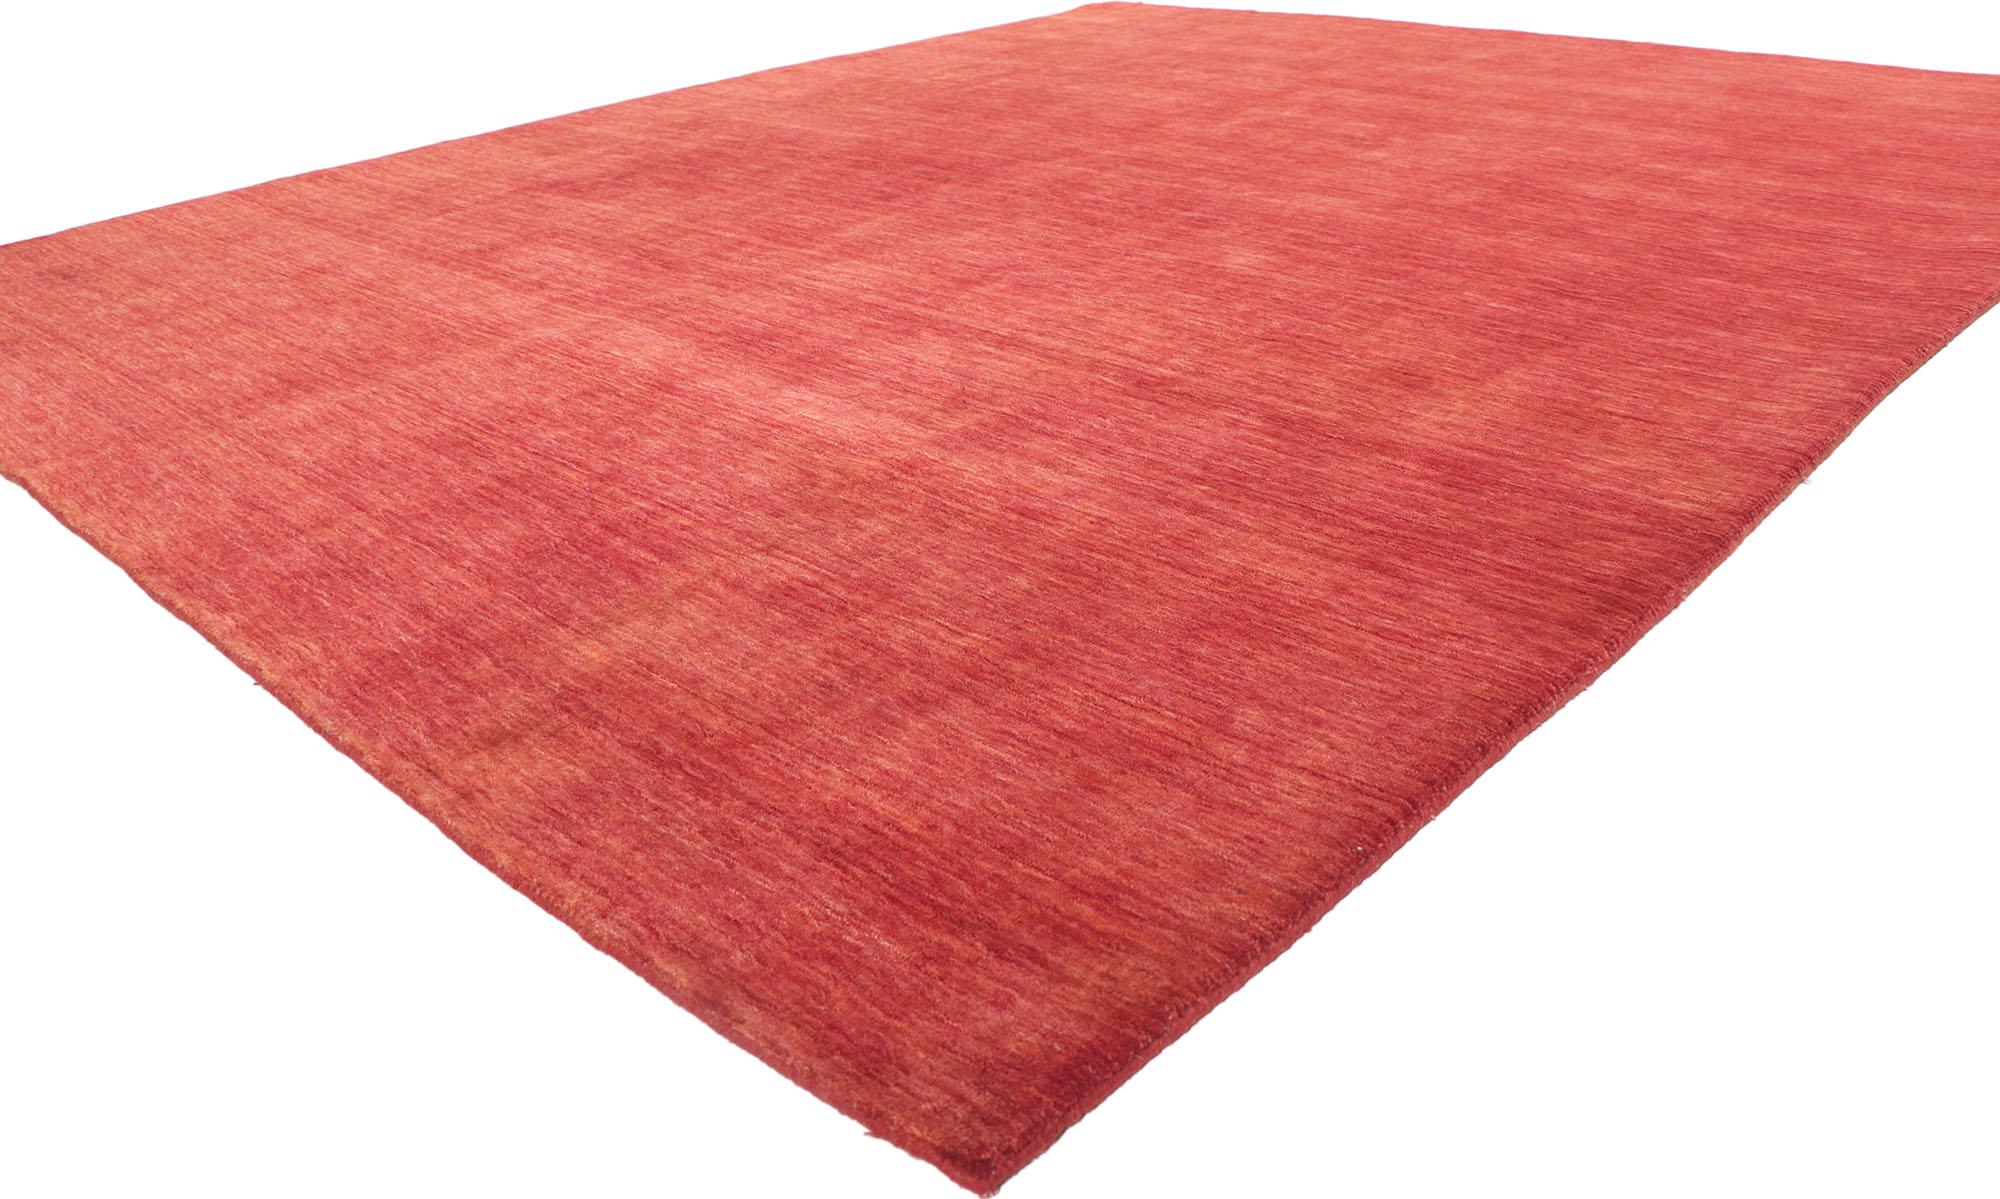 30727 New Contemporary Red Area Rug with Modern Style 08'03 x 10'00. Mühelos, elegant und lässig präsentiert sich dieser moderne indische Teppich. Es zeichnet sich durch herrliche Rottöne und sanft abgestufte Streifen aus, die von Webkante zu